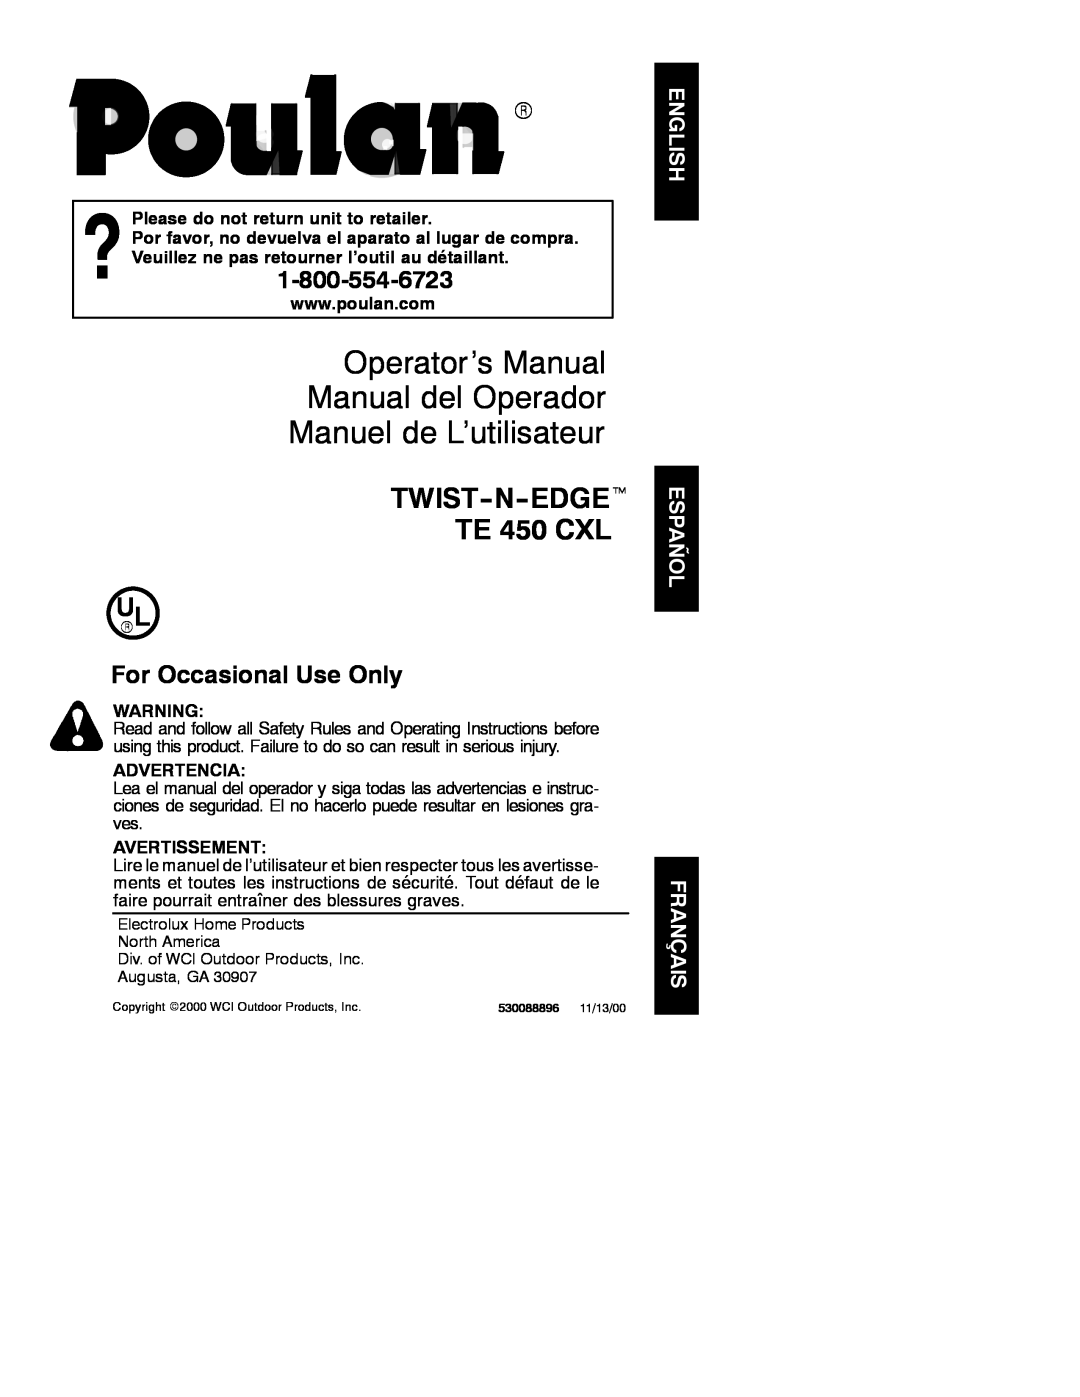 Poulan 530088896 operating instructions Operator’s Manual Manual del Operador Manuel de L’utilisateur, Advertencia 